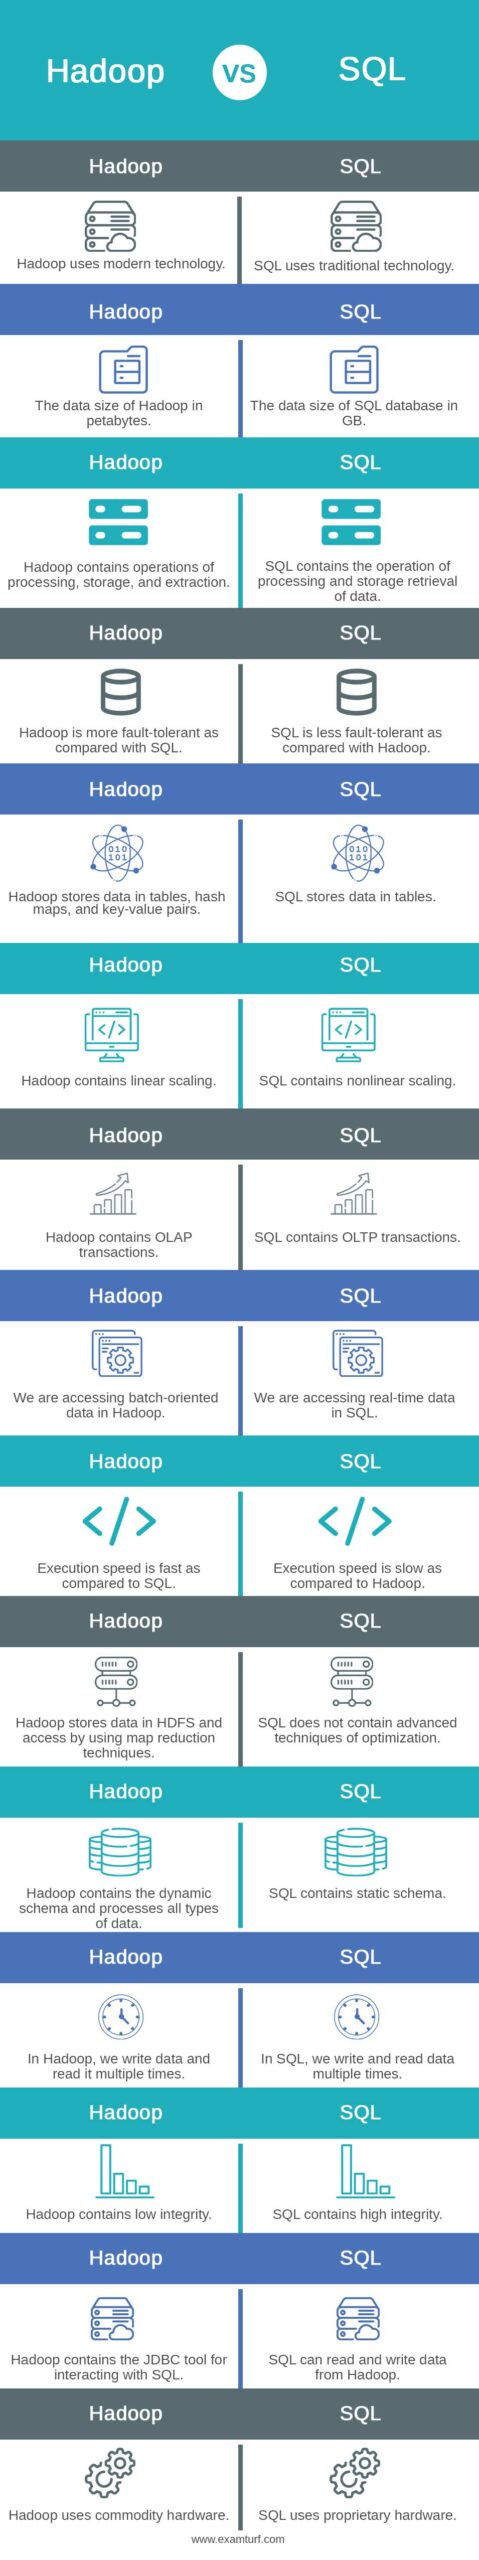 Hadoop-vs-SQL-info